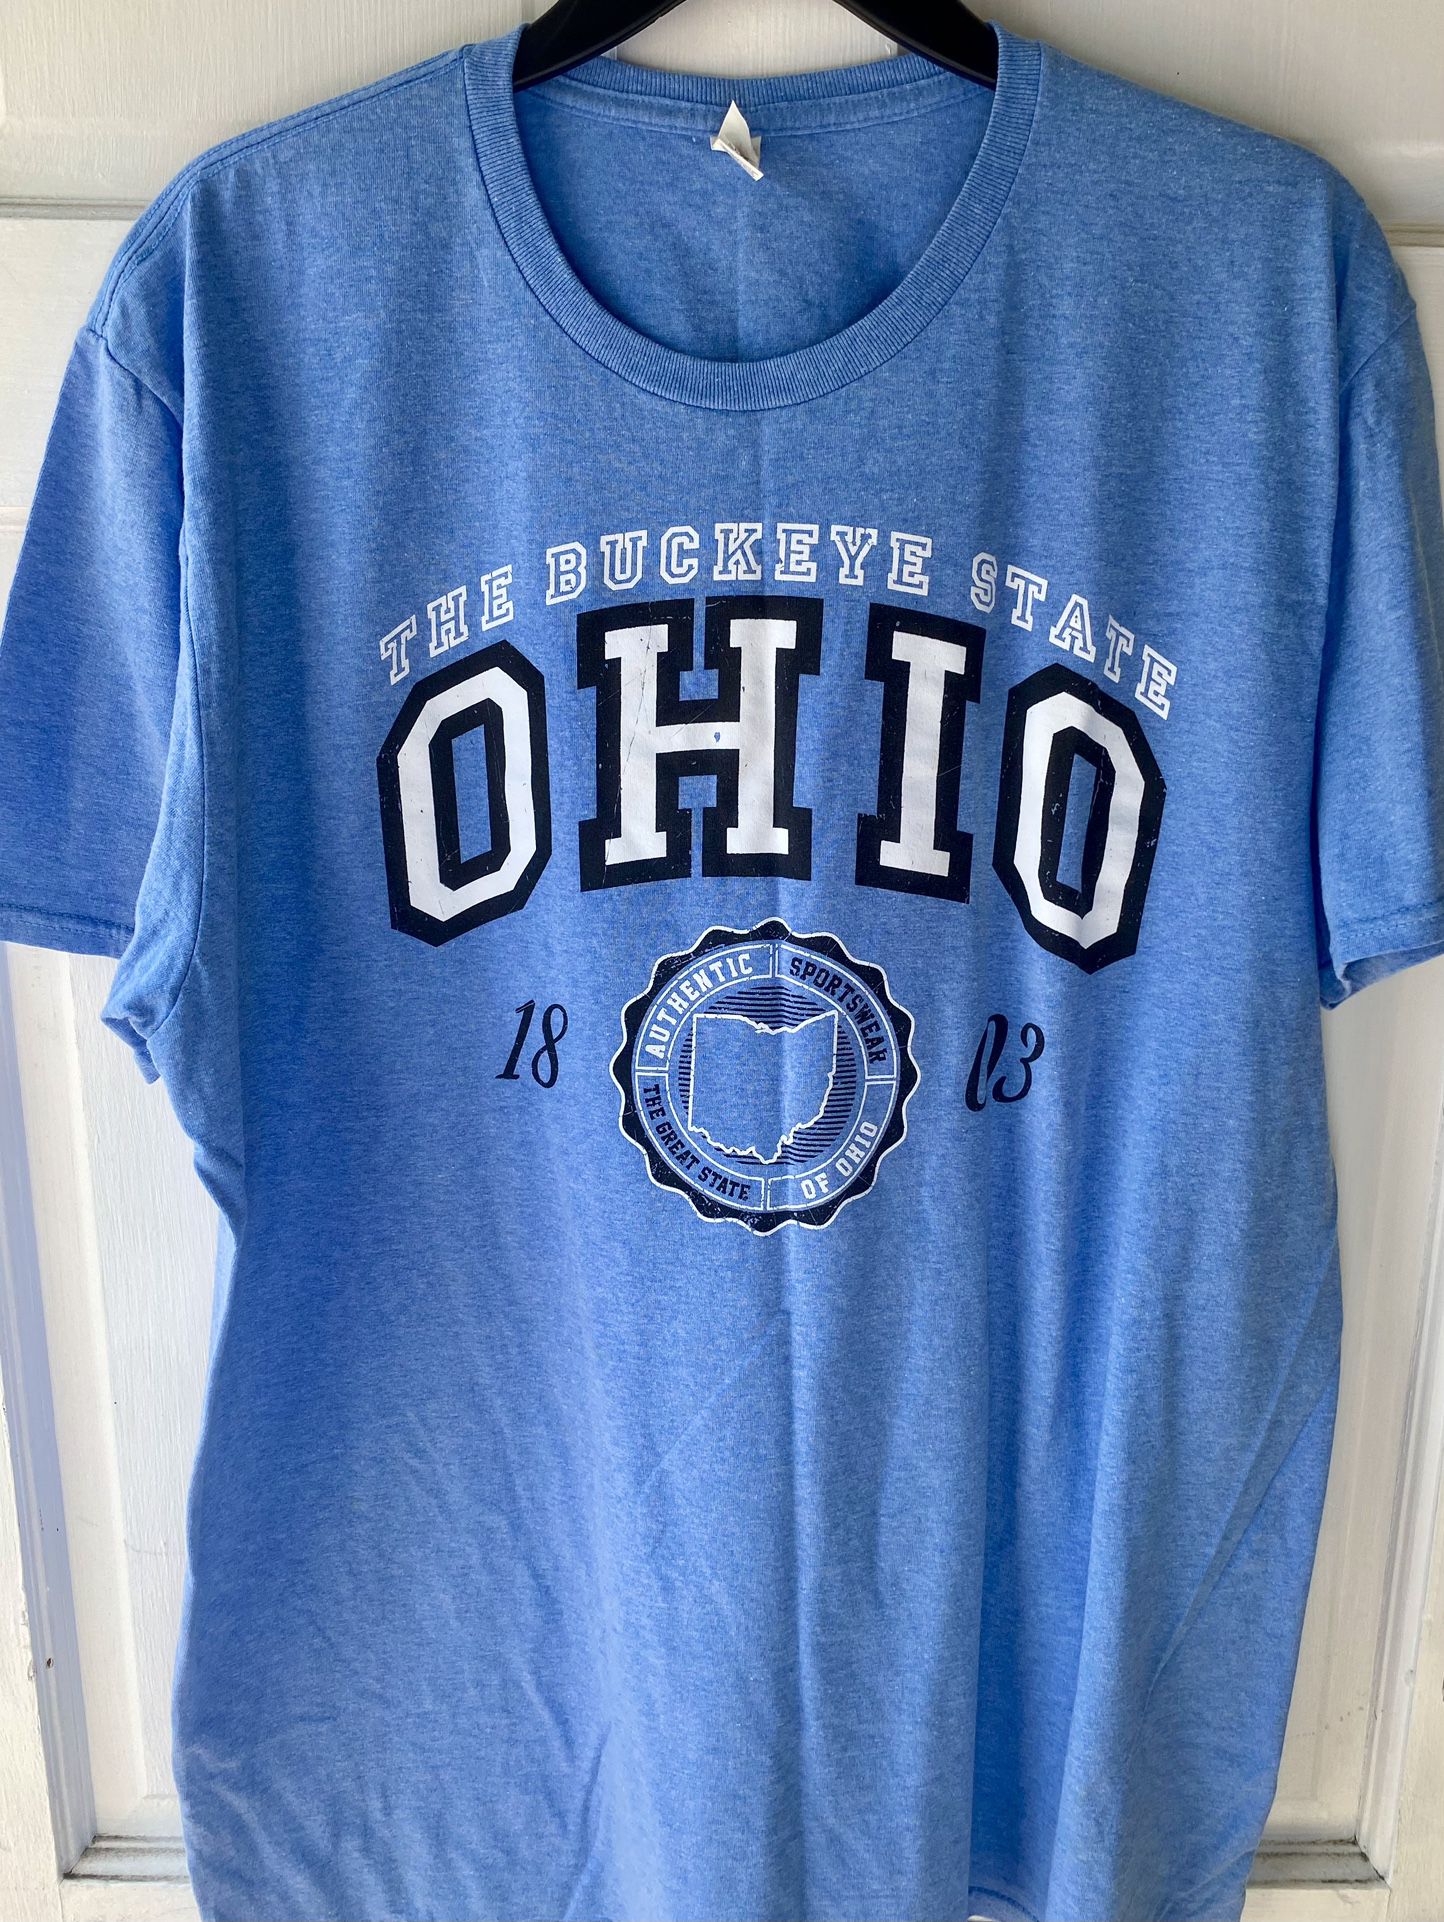 2 NEW OHIO STATE T-Shirts